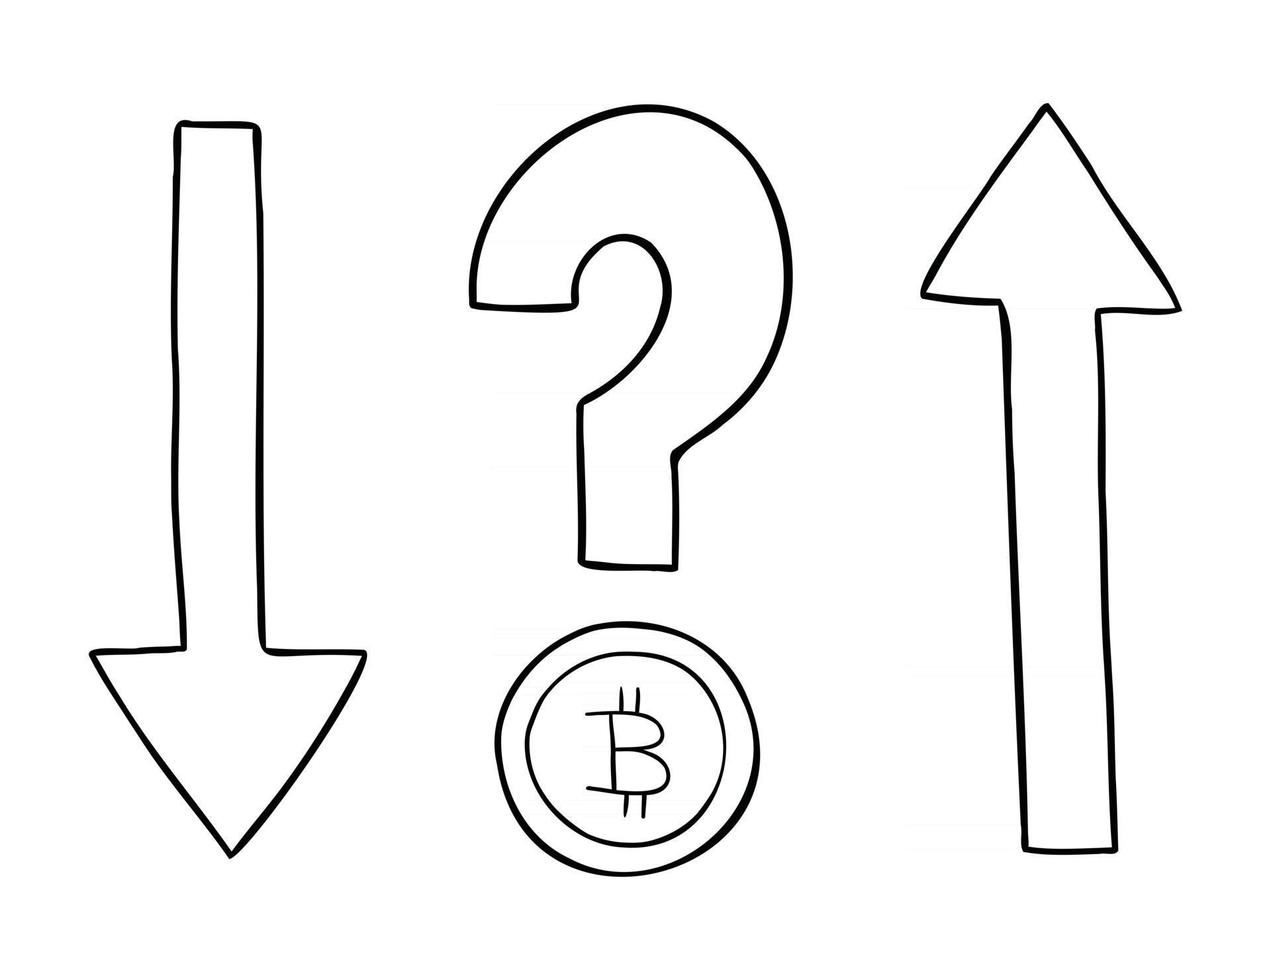 Fumetto illustrazione vettoriale di criptovaluta bitcoin con punto interrogativo e frecce su e giù